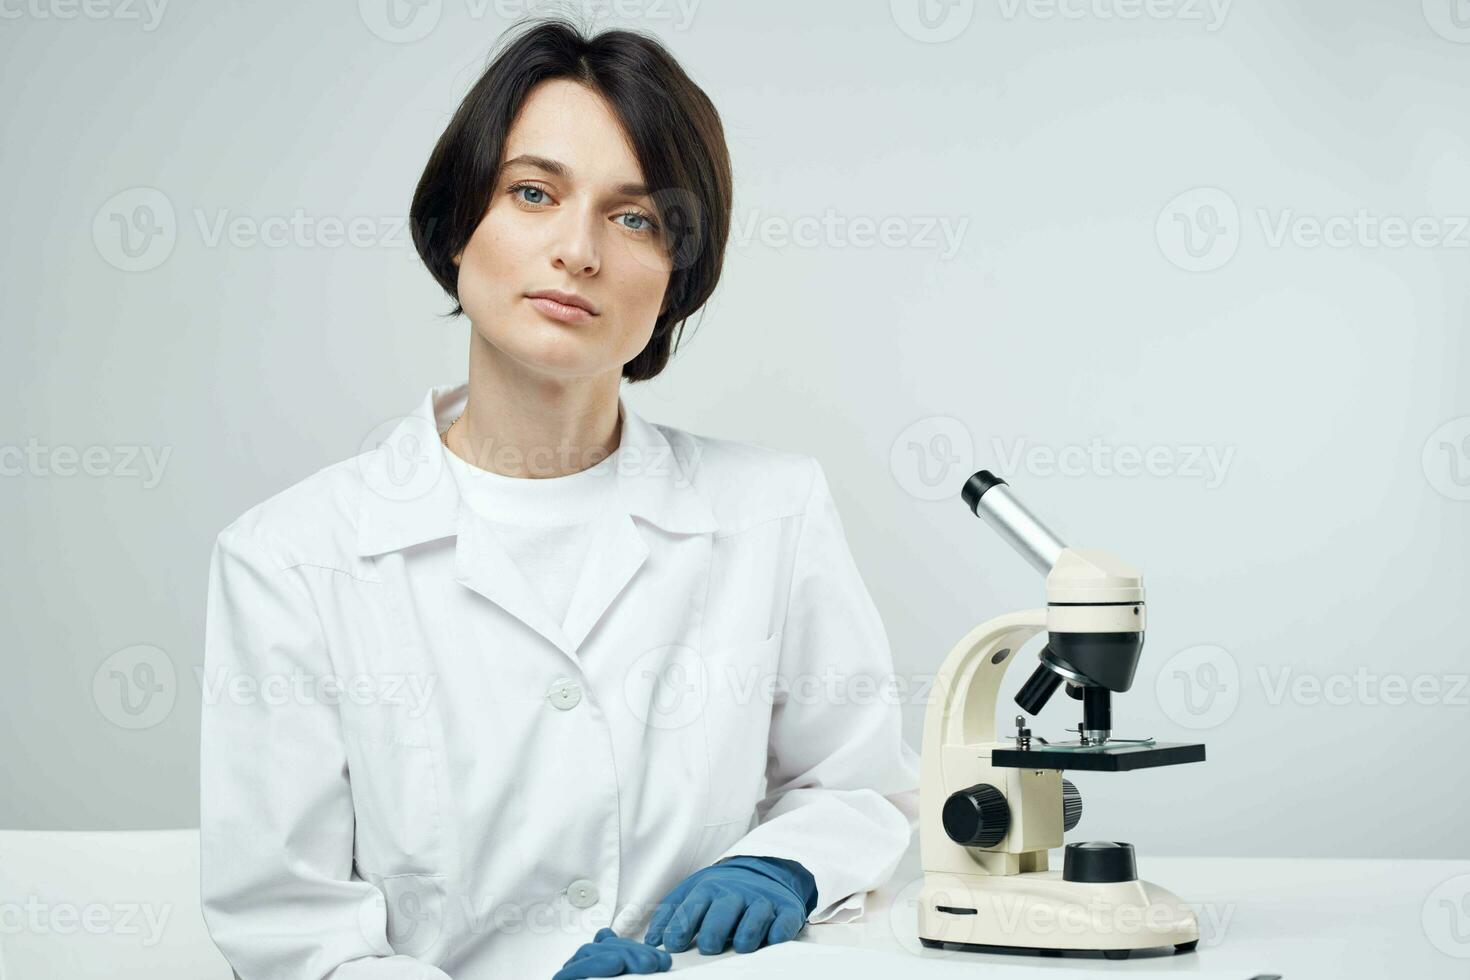 female scientist in white coat laboratory microscope science experiment photo